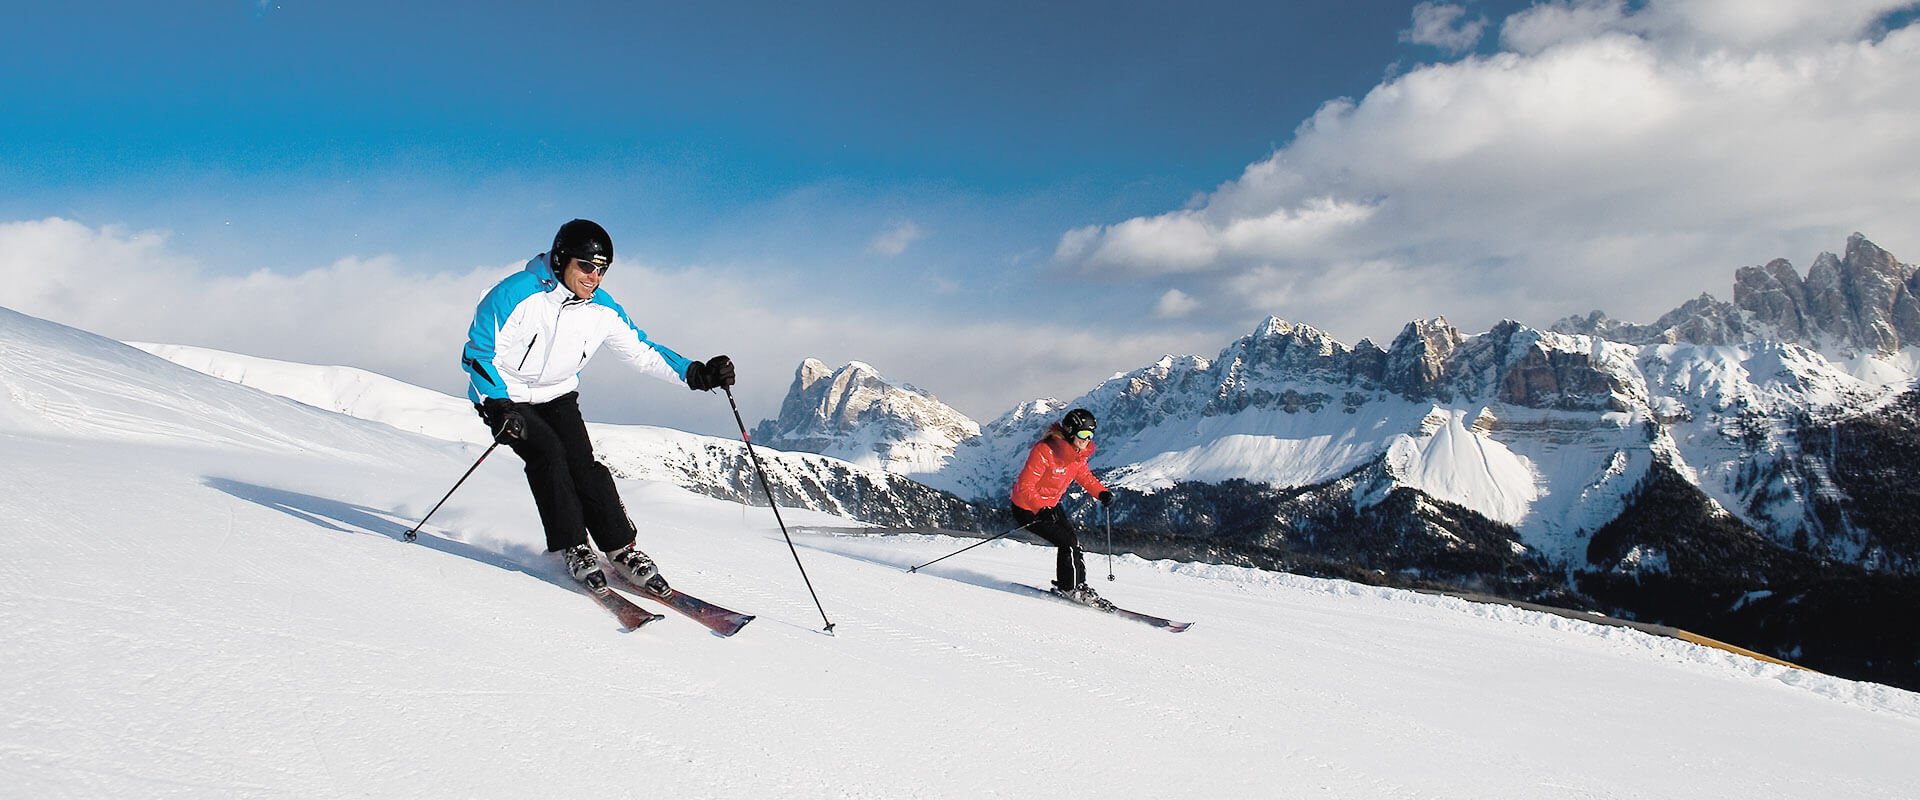 Erlebnisreicher Skiurlaub in Südtirol - Winterurlaub an der Plose im Eisacktal